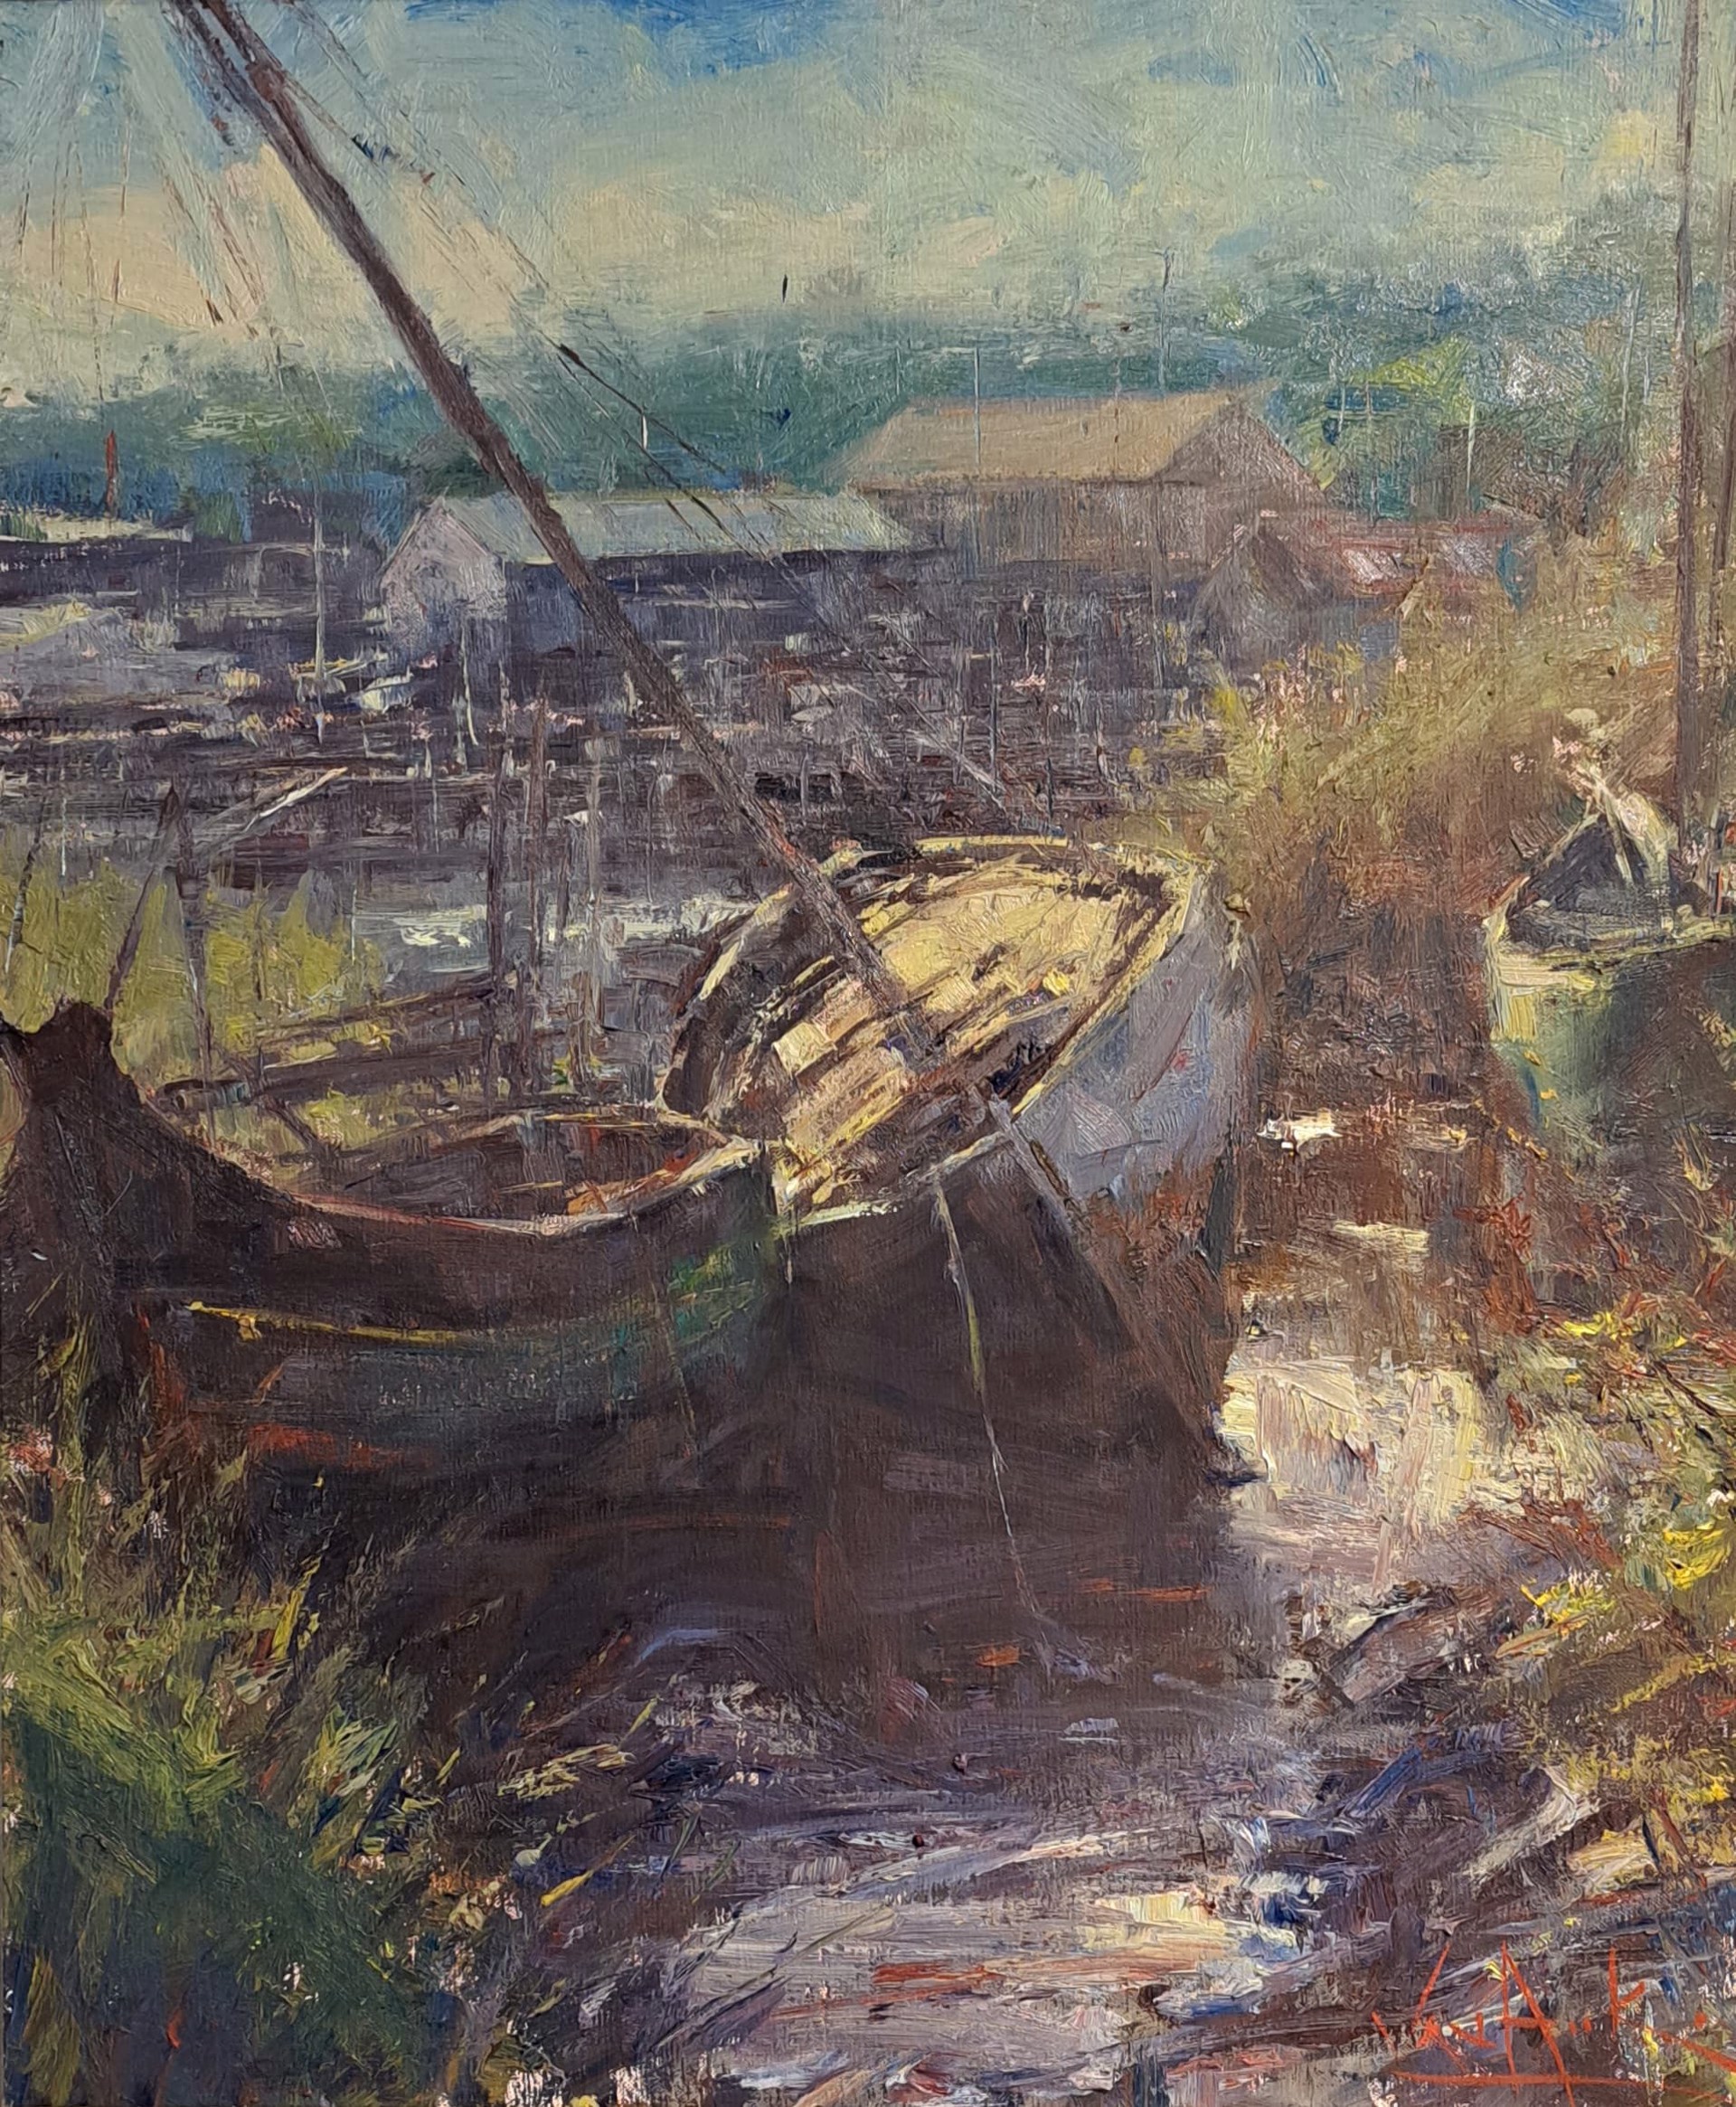 Essex Boatyard by George Van Hook